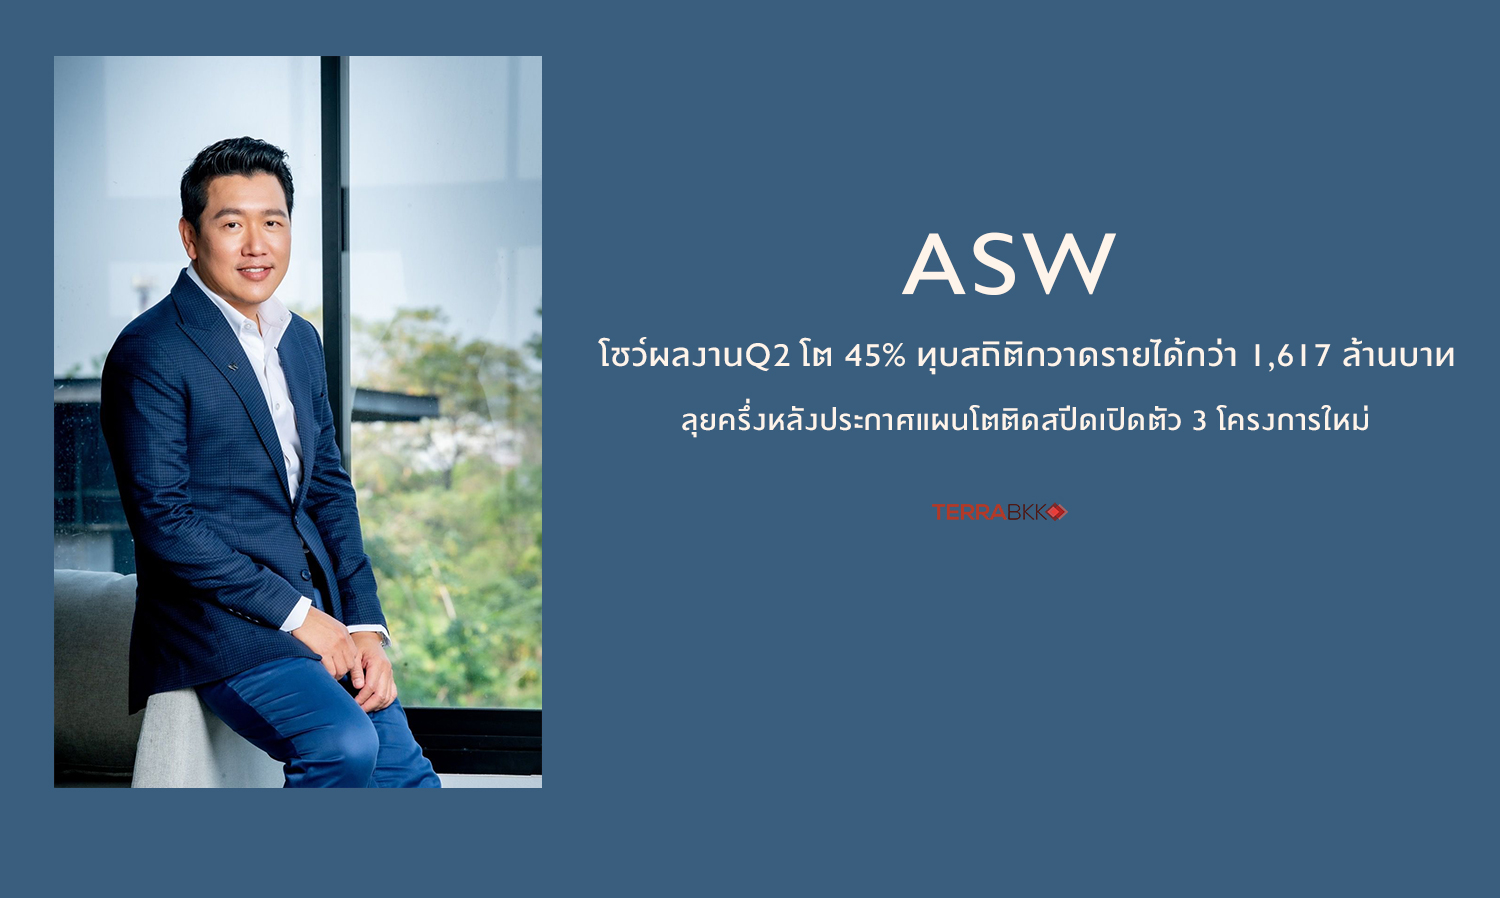 ASW โชว์ผลงานQ2 โต 45% ทุบสถิติกวาดรายได้กว่า 1,617 ล้านบาท 